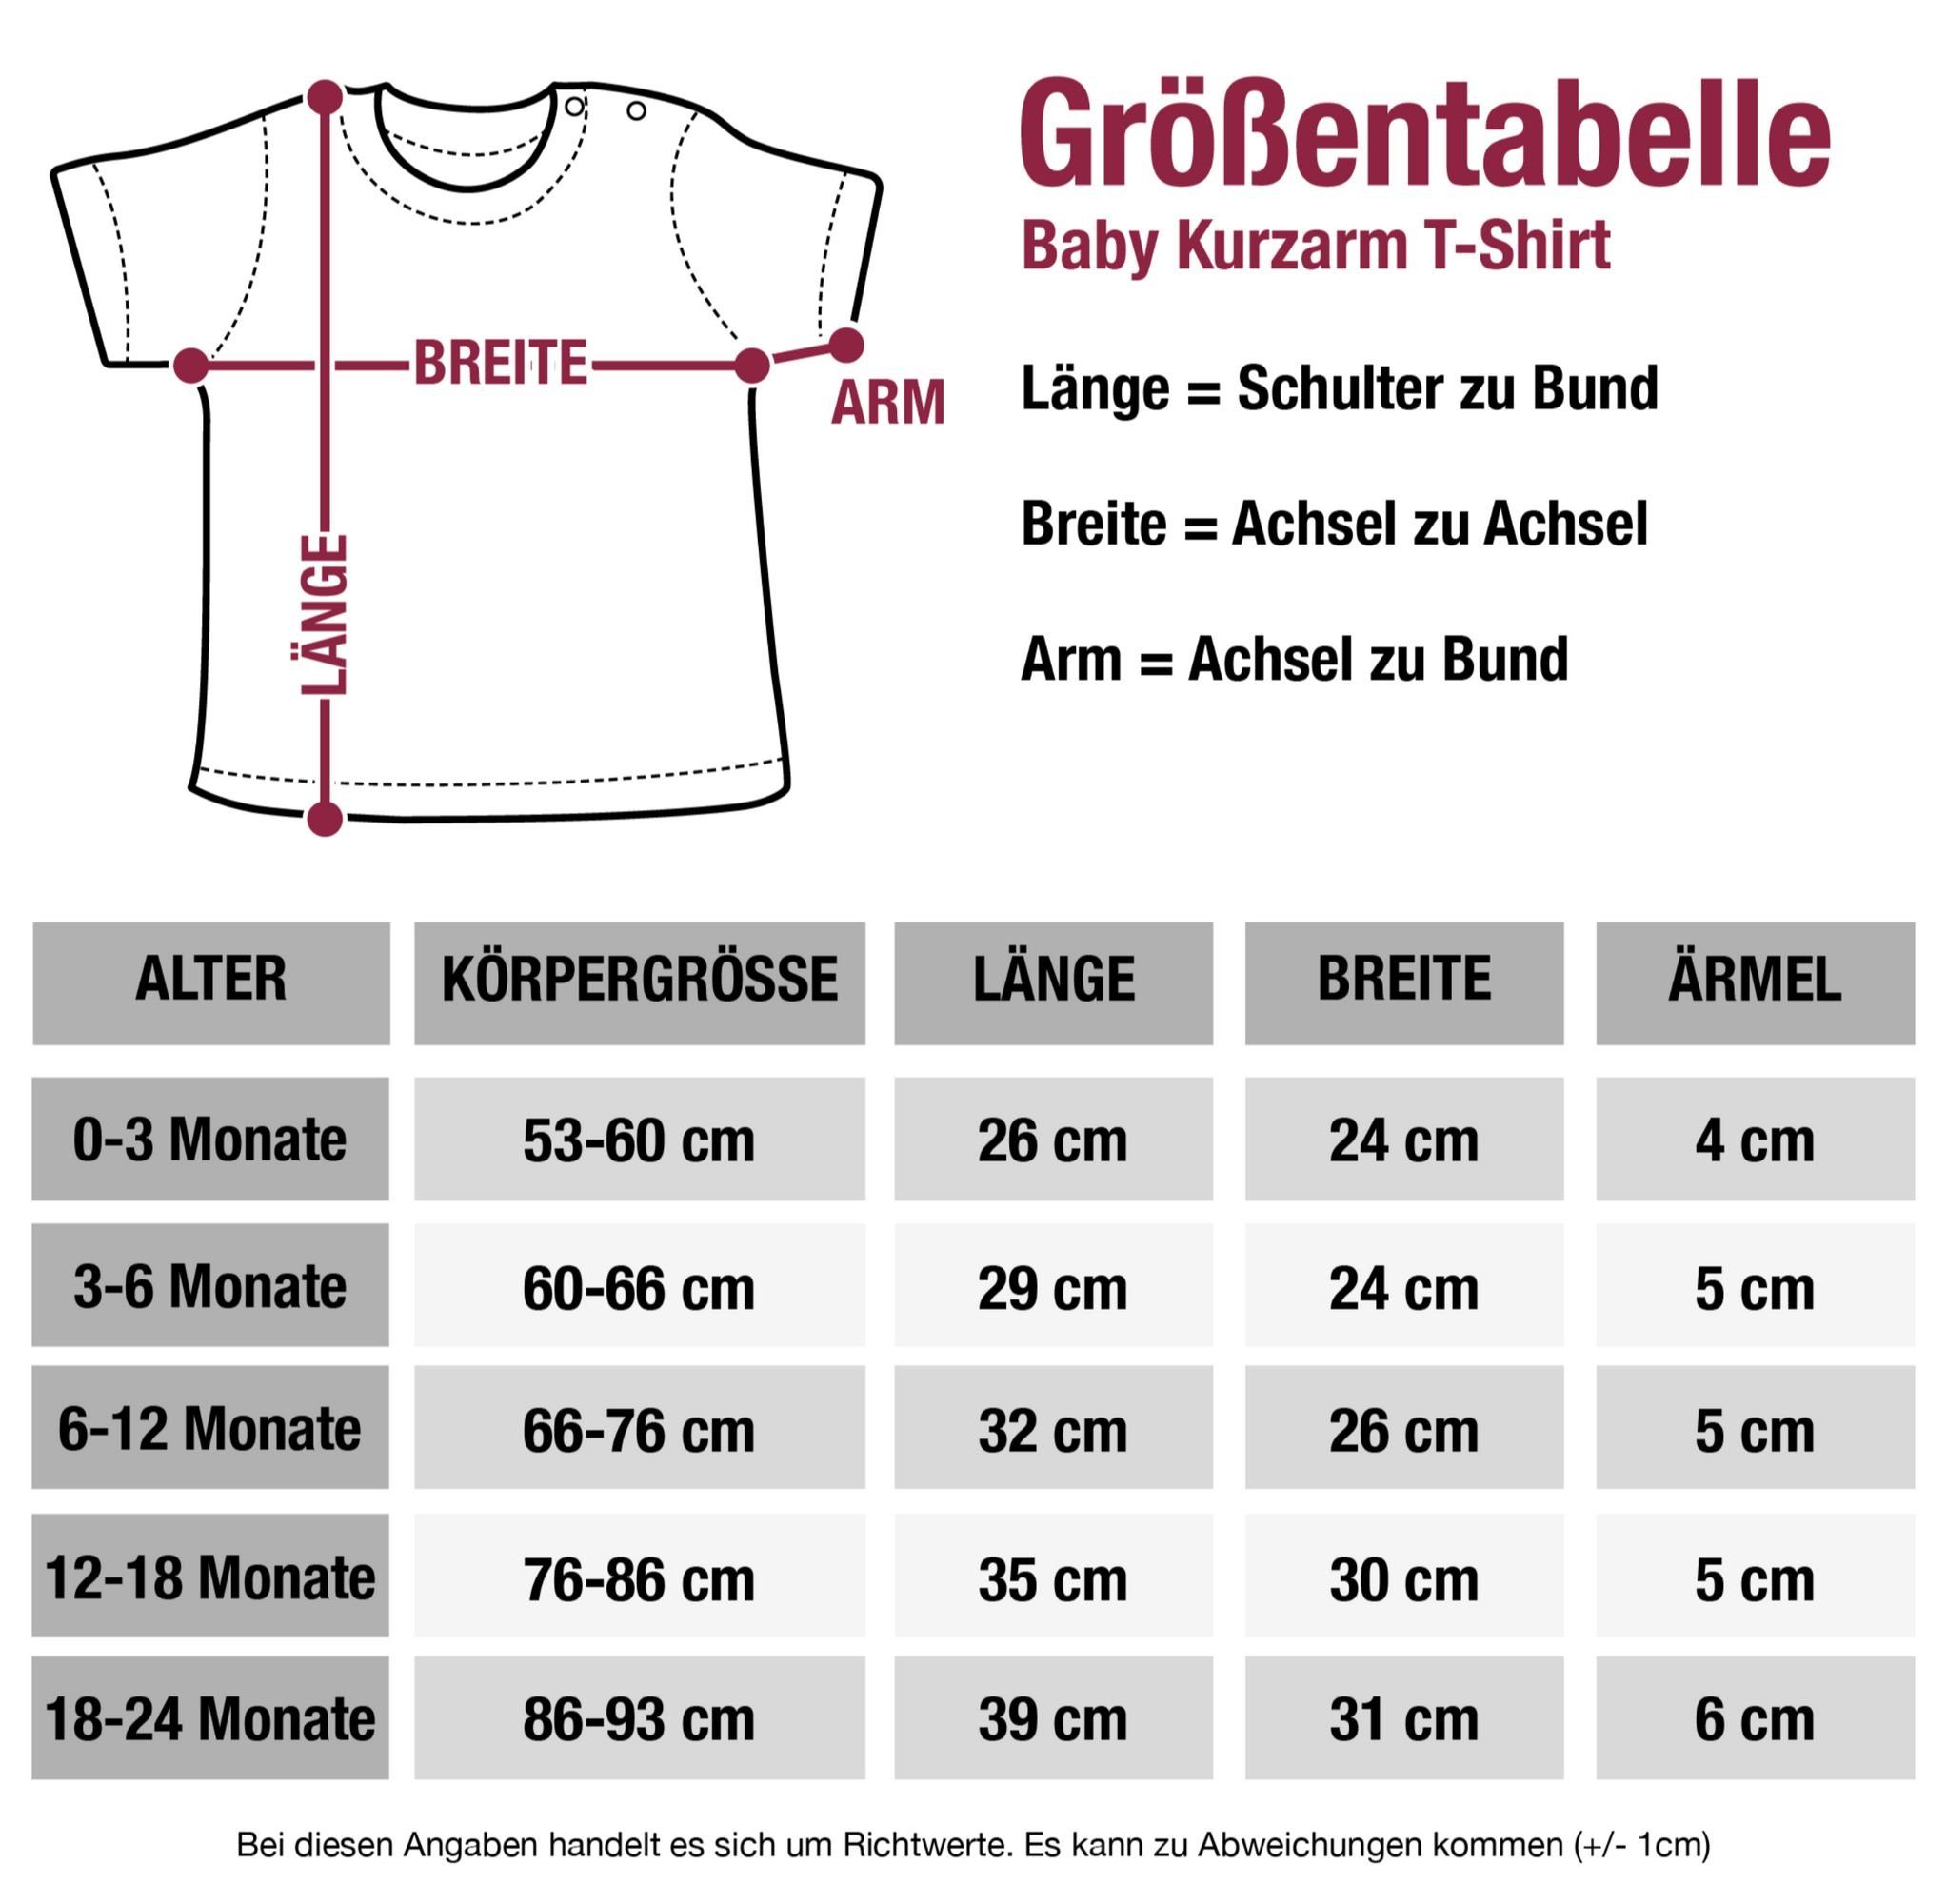 Lausmadl Oktoberfest Mode 2 Baby Outfit Hirschgeweih T-Shirt Mintgrün für Shirtracer